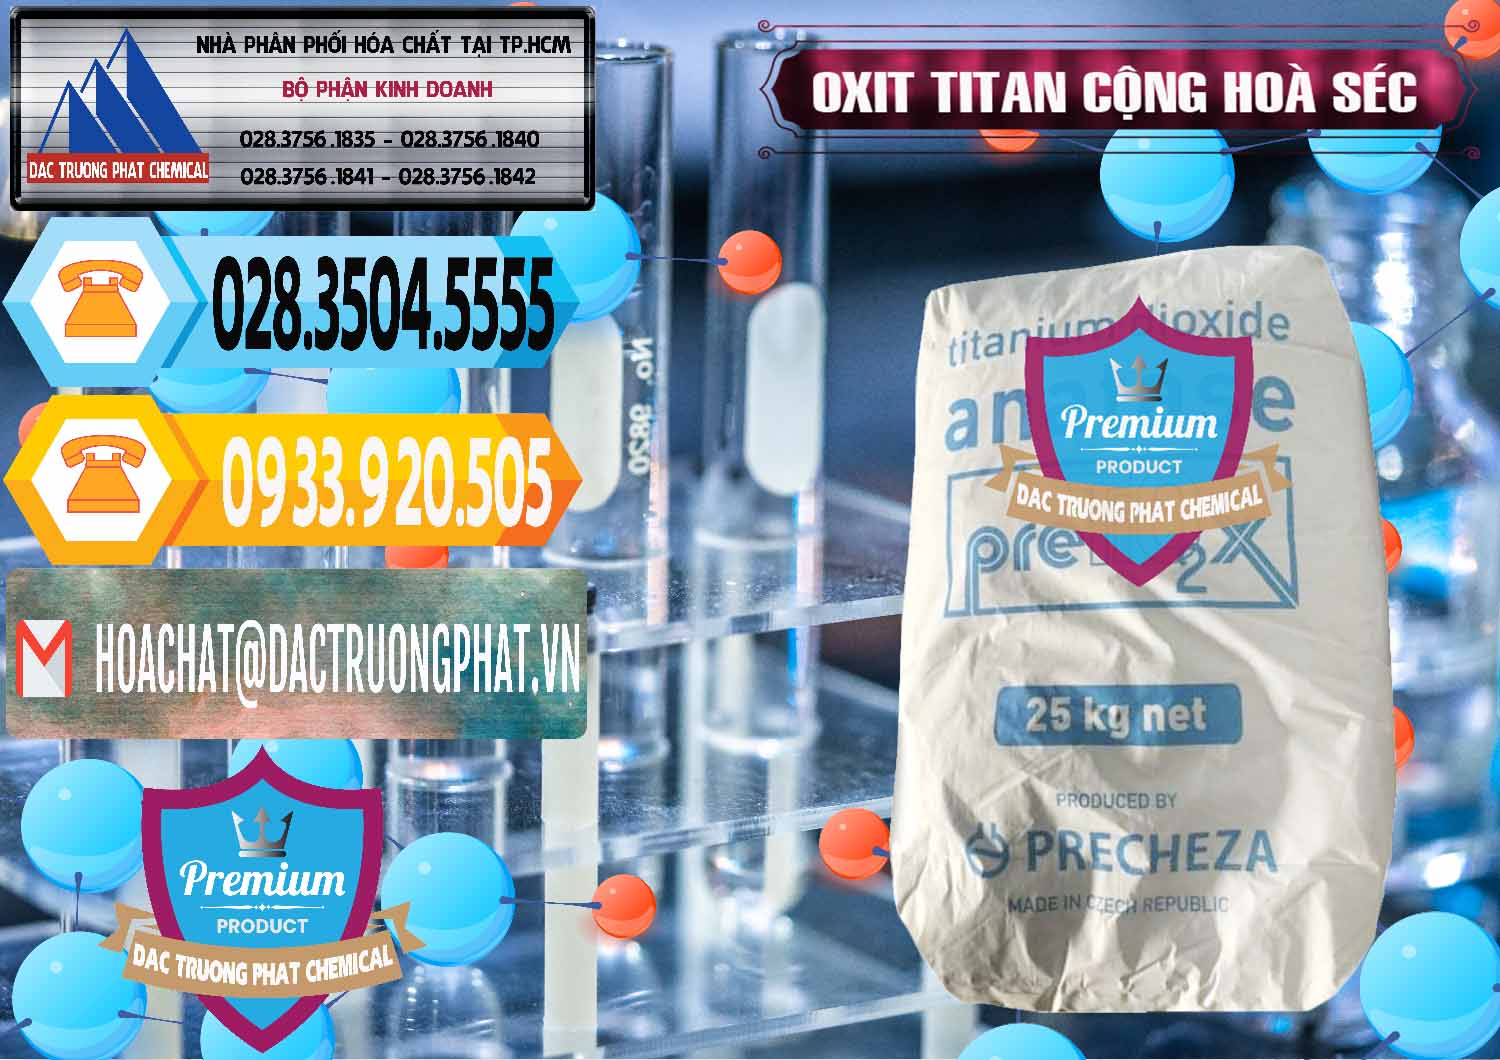 Nơi bán - phân phối Oxit Titan KA100 – Tio2 Cộng Hòa Séc Czech Republic - 0407 - Chuyên kinh doanh - phân phối hóa chất tại TP.HCM - hoachattayrua.net